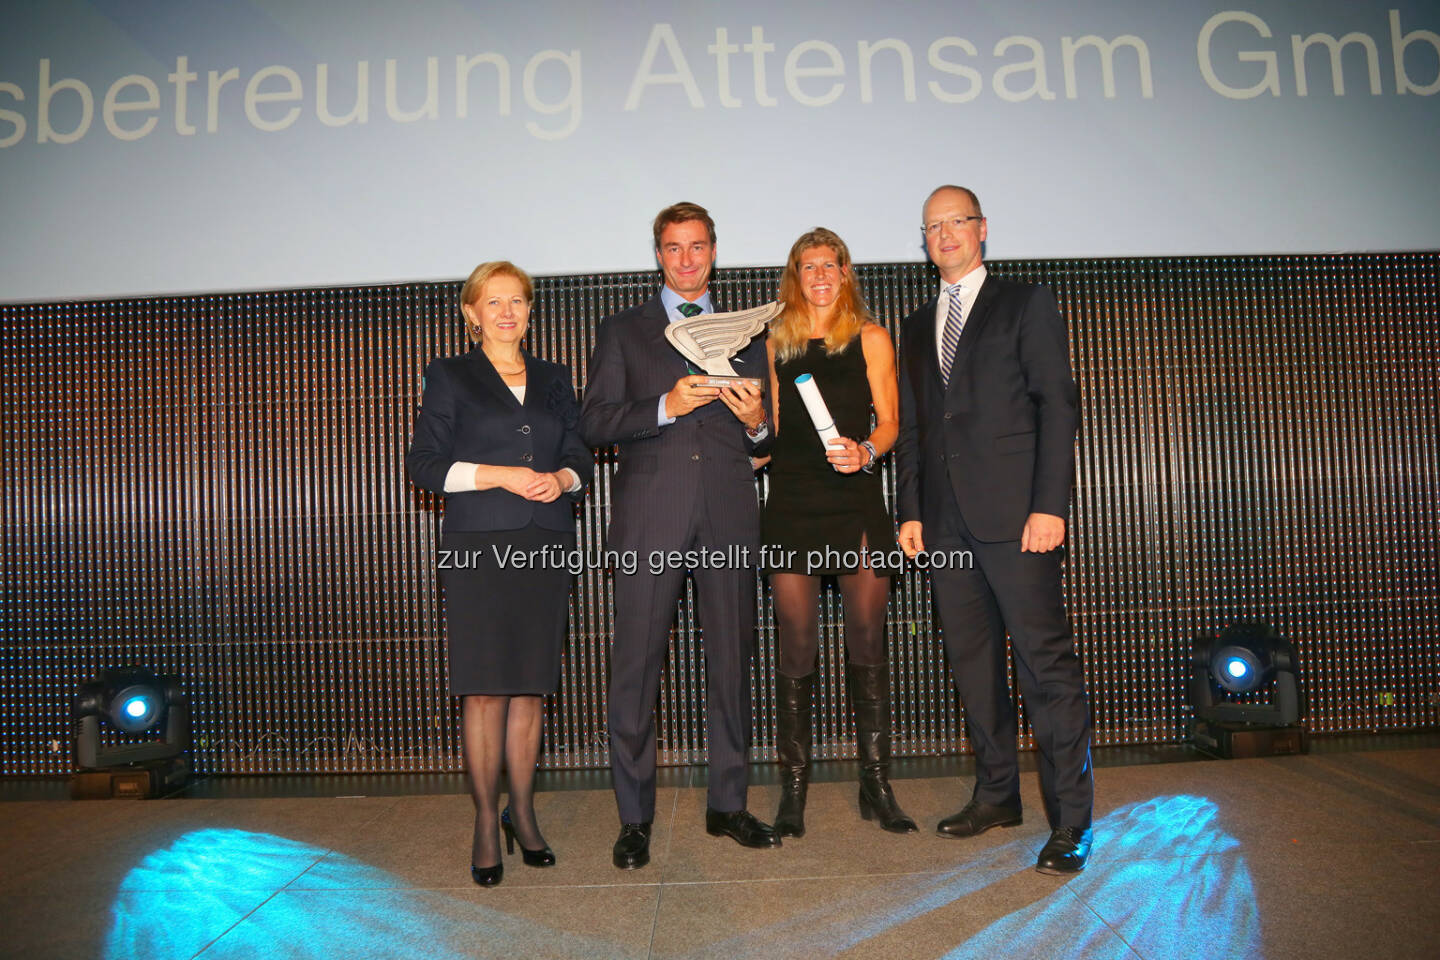 WK-Wien -Präsidentin Brigitte Jank (li.) und PwC-Partner Jörg Busch und gratulieren dem Unternehmerpaar Caroline und Oliver Attensam